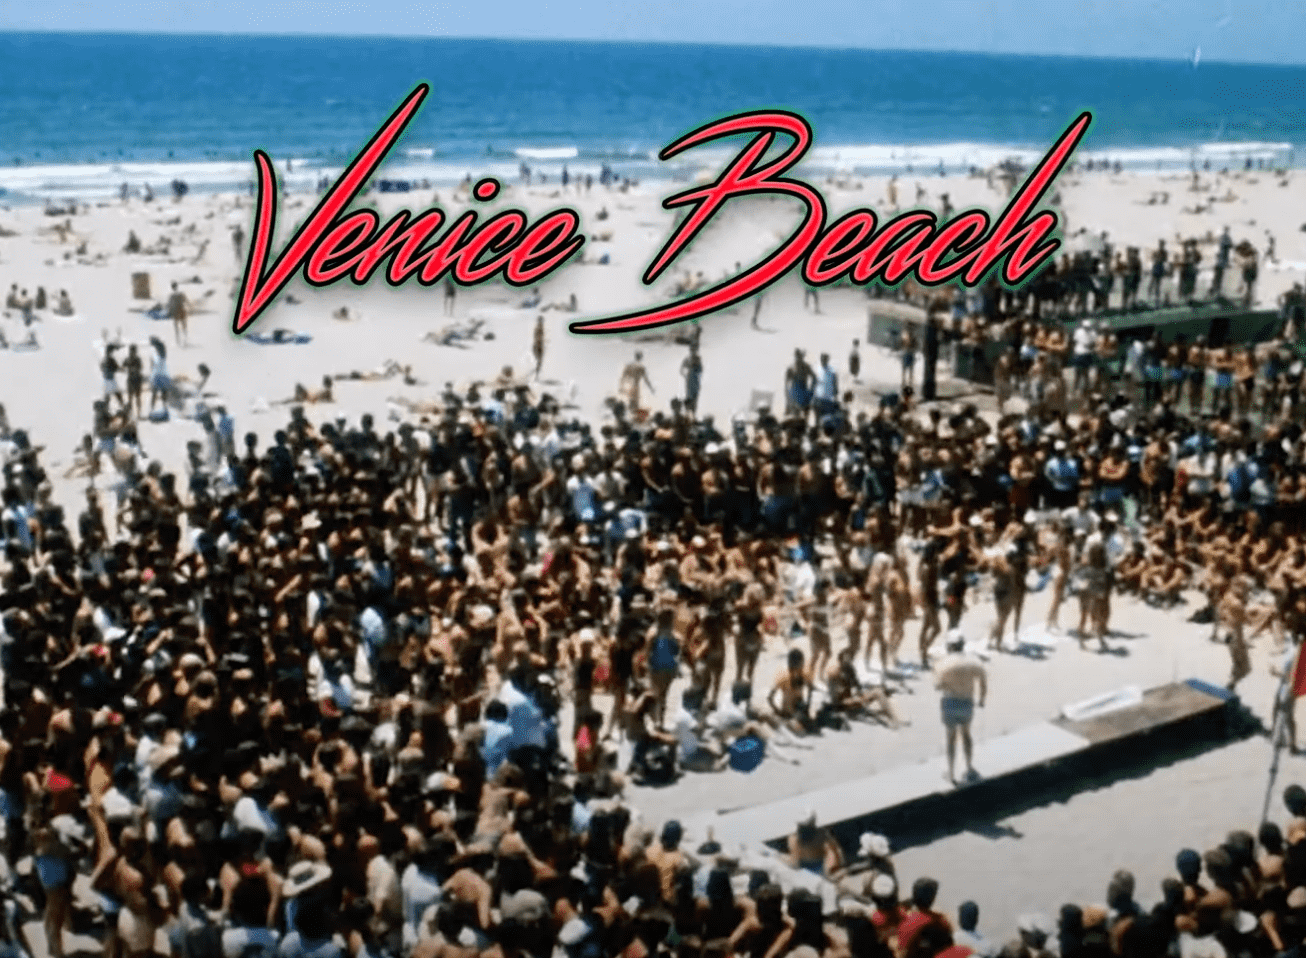 Synth Street: Venice Beach